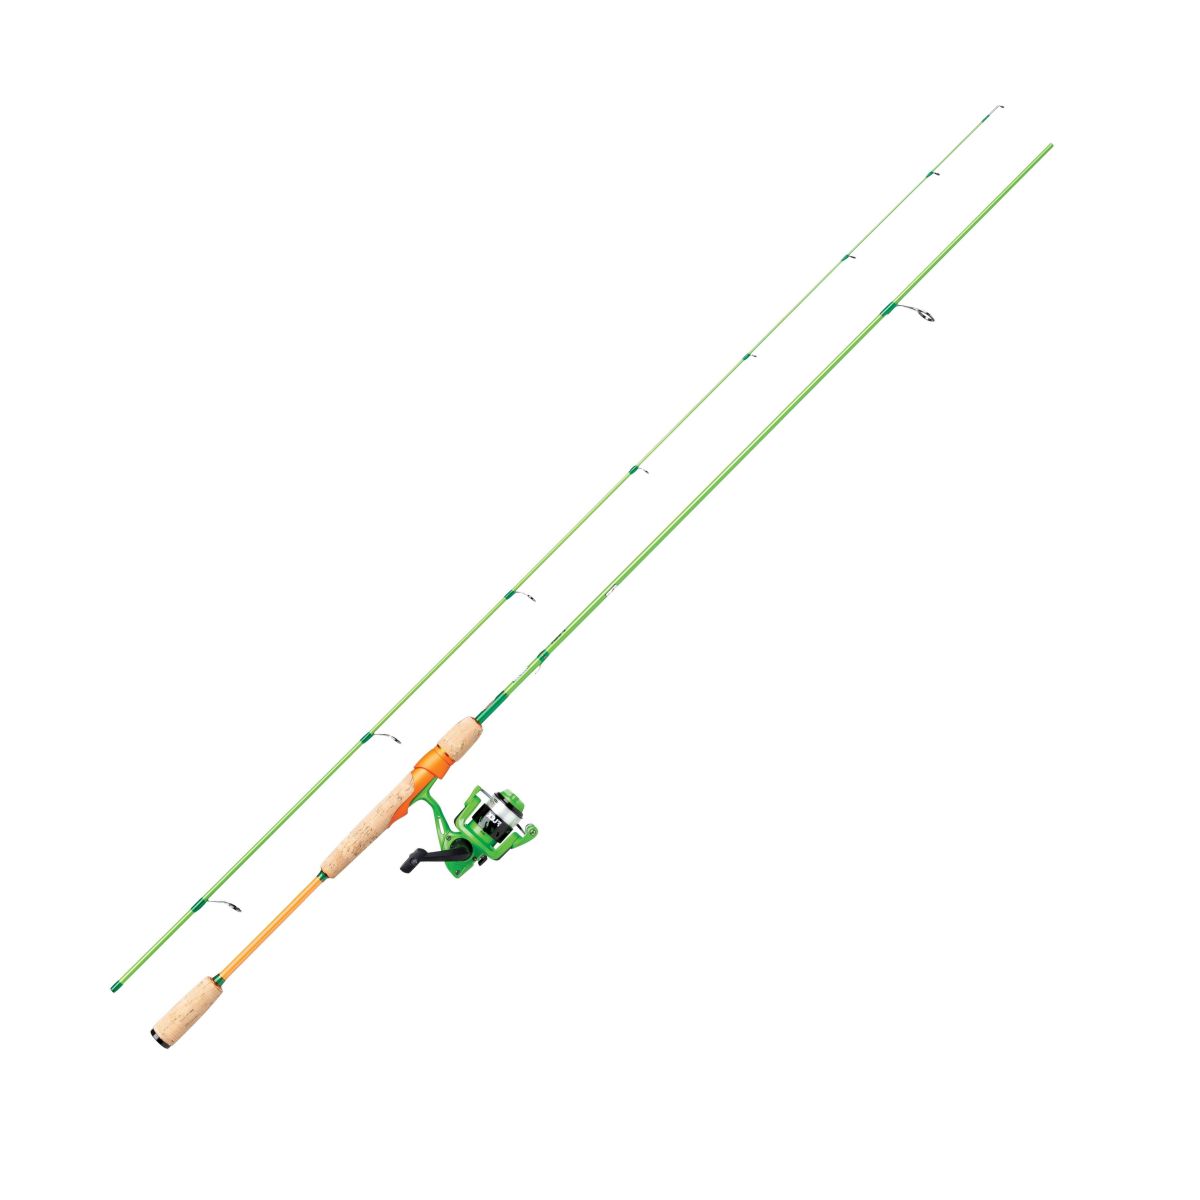 Přívlačový prut s navijákem Berkley Flex Trout Spin Cork 2,70m 3-15g